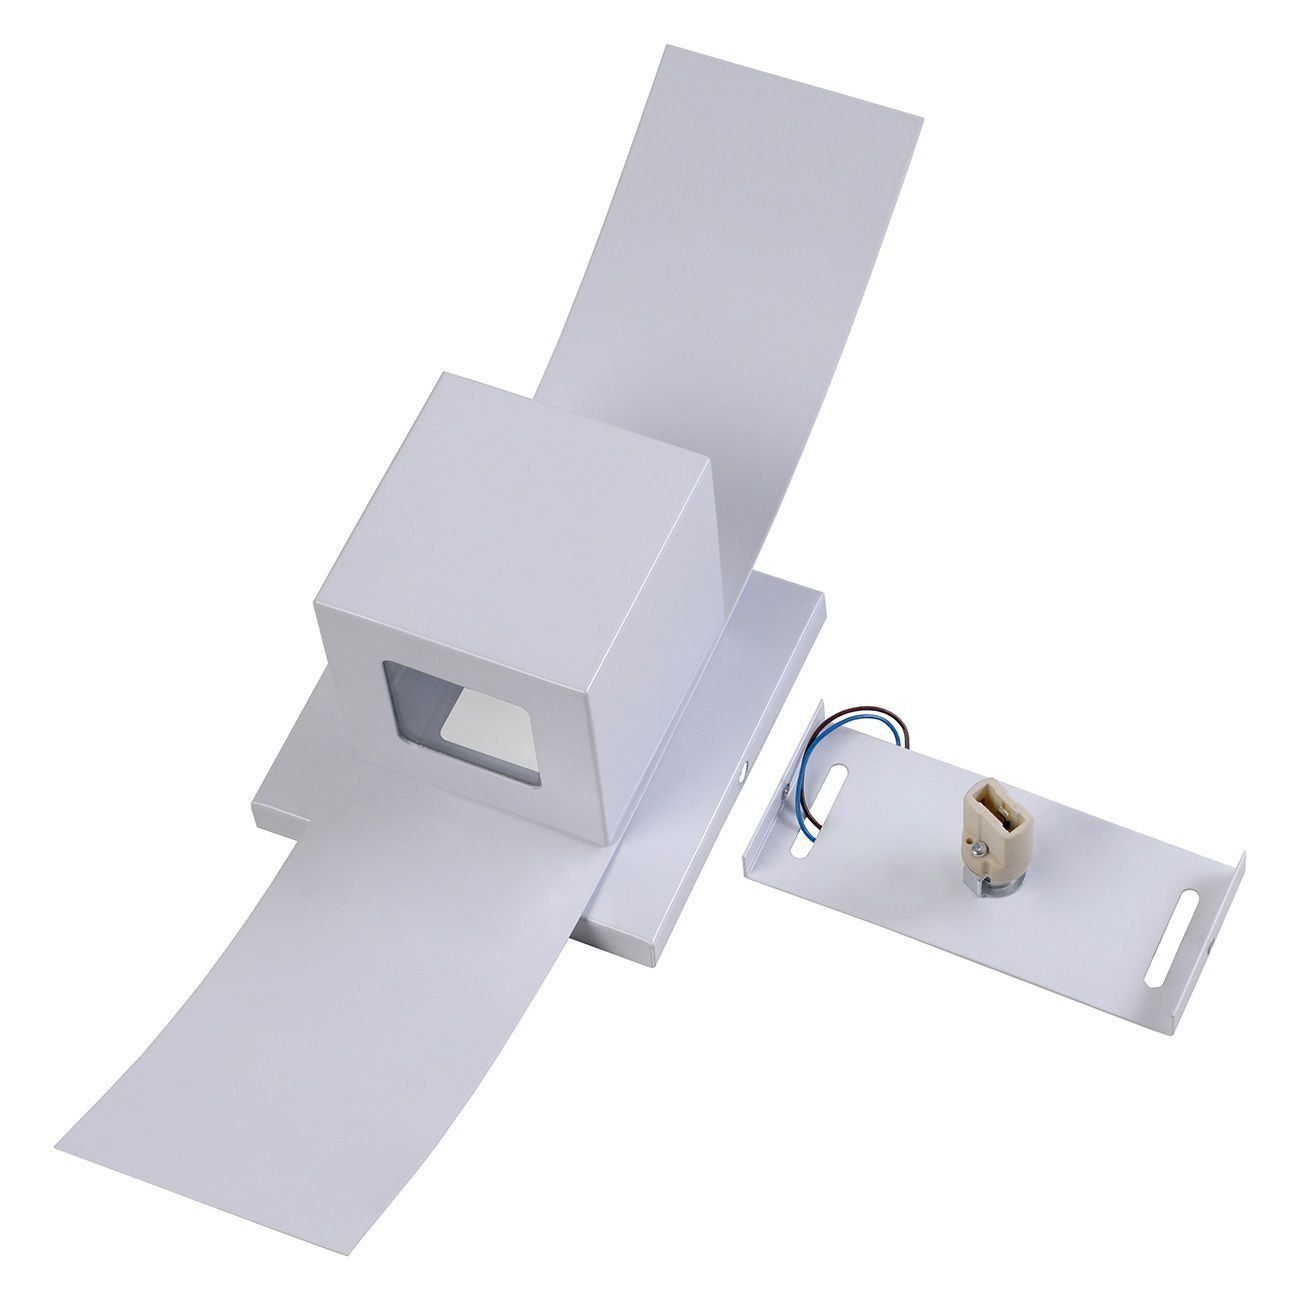 Arandela Box com Aba 2 Focos Luminária Externa Interna Muro Parede Alumínio Branco - Rei da Iluminação